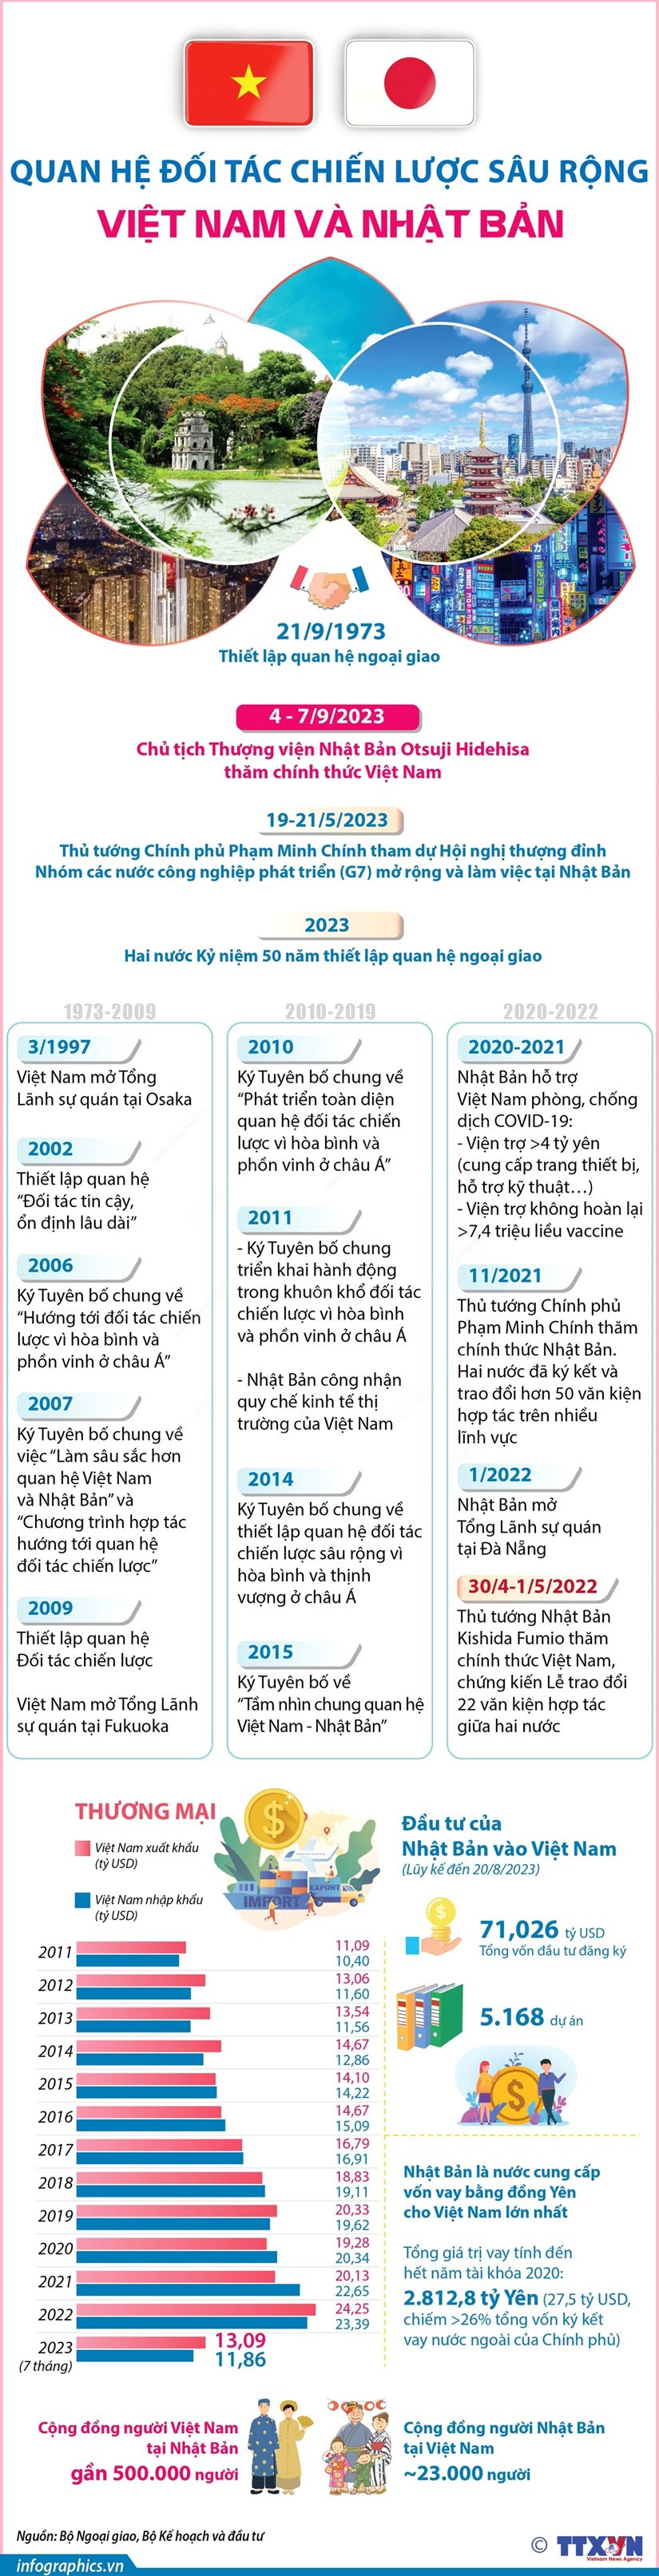 [Infographics] Quan he Doi tac Chien luoc sau rong Viet Nam-Nhat Ban hinh anh 1